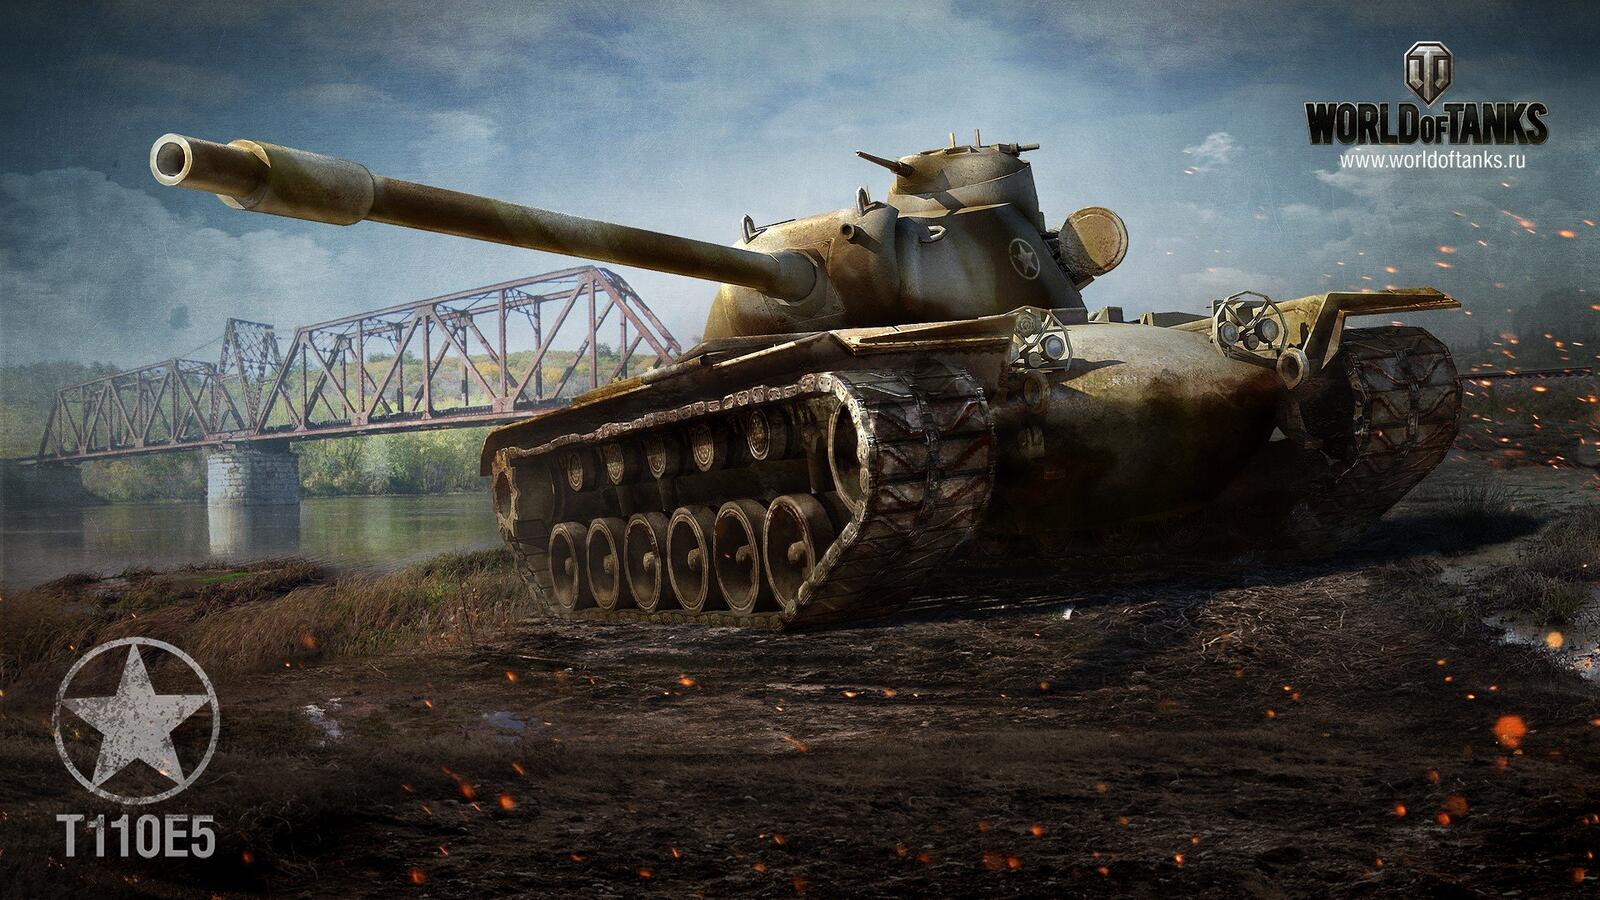 Бесплатное фото Т110е5 из игре World of Tanks